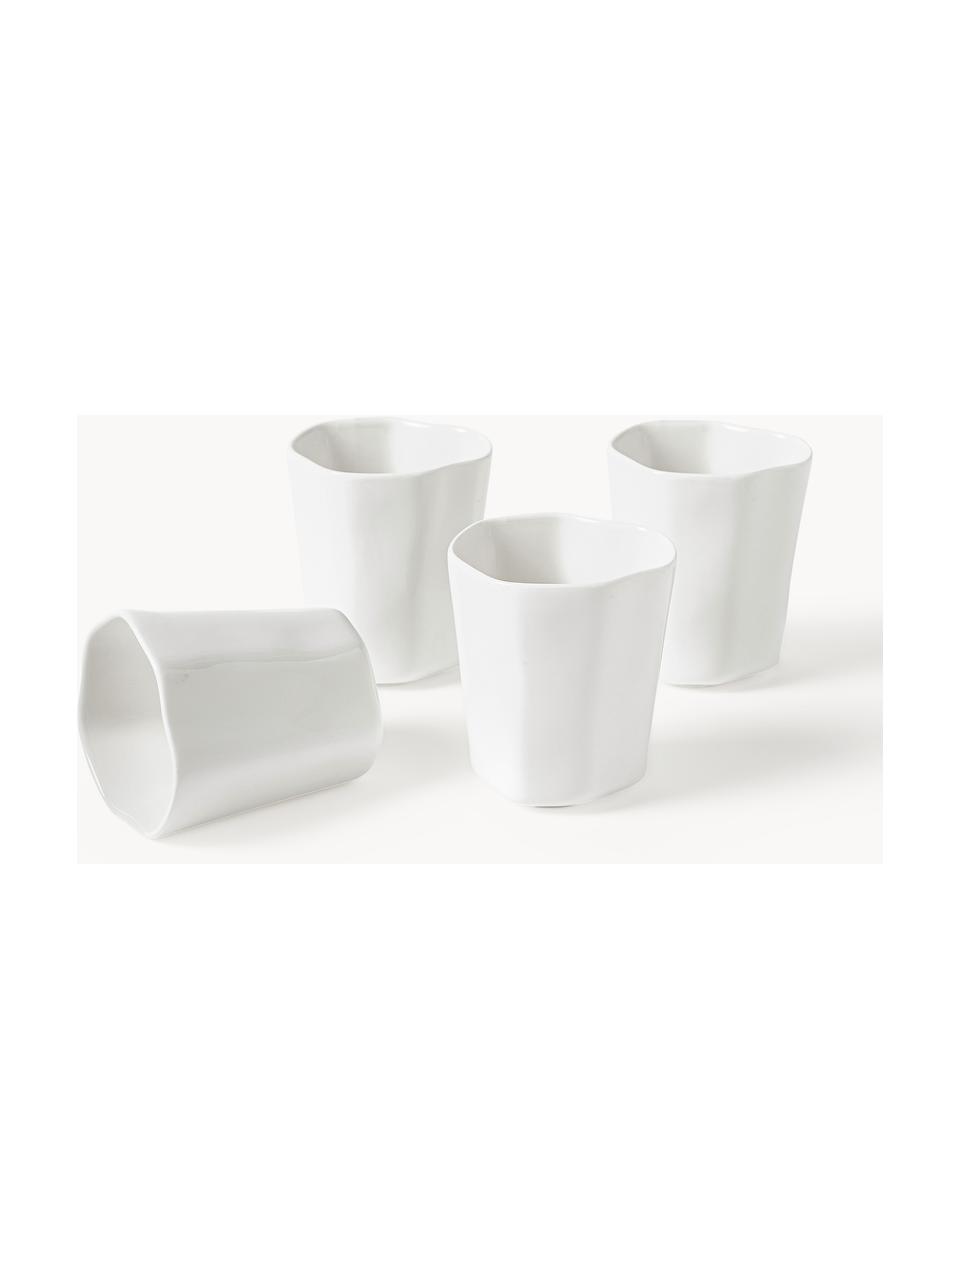 Porzellan-Kaffeebecher Joana in organischer Form, 4 Stück, Porzellan, Weiß, Ø 7 x H 10 cm, 240 ml